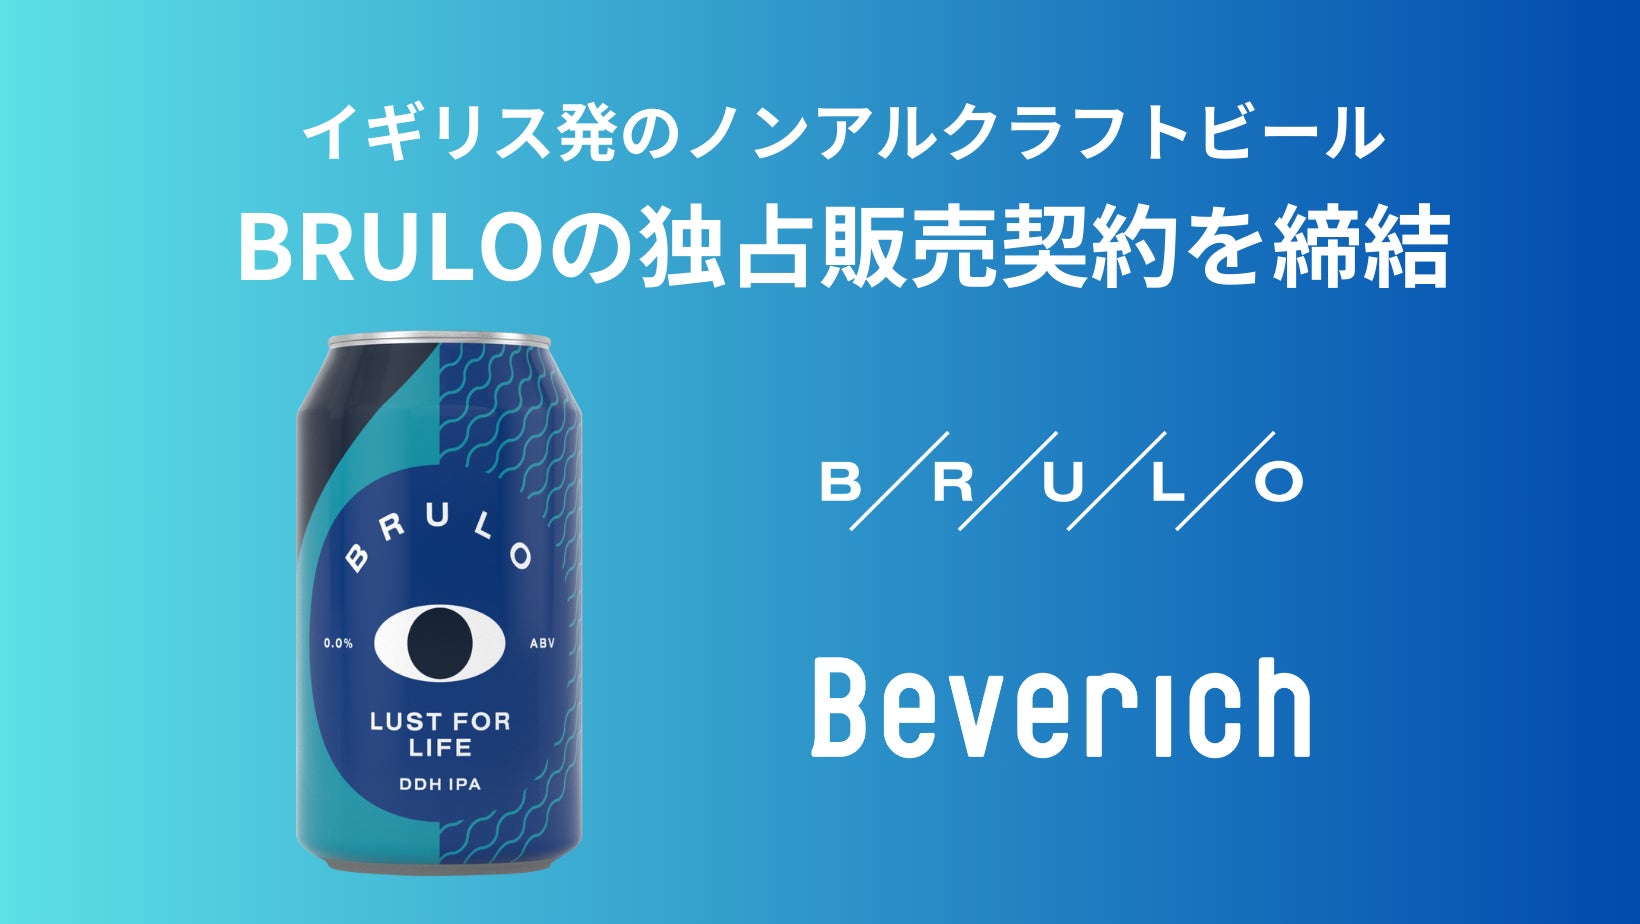 Beverich（ビバリッチ）、イギリスのノンアルコールクラフトビール「BRULO（ブルーロ）」の日本国内における独占販売契約を締結